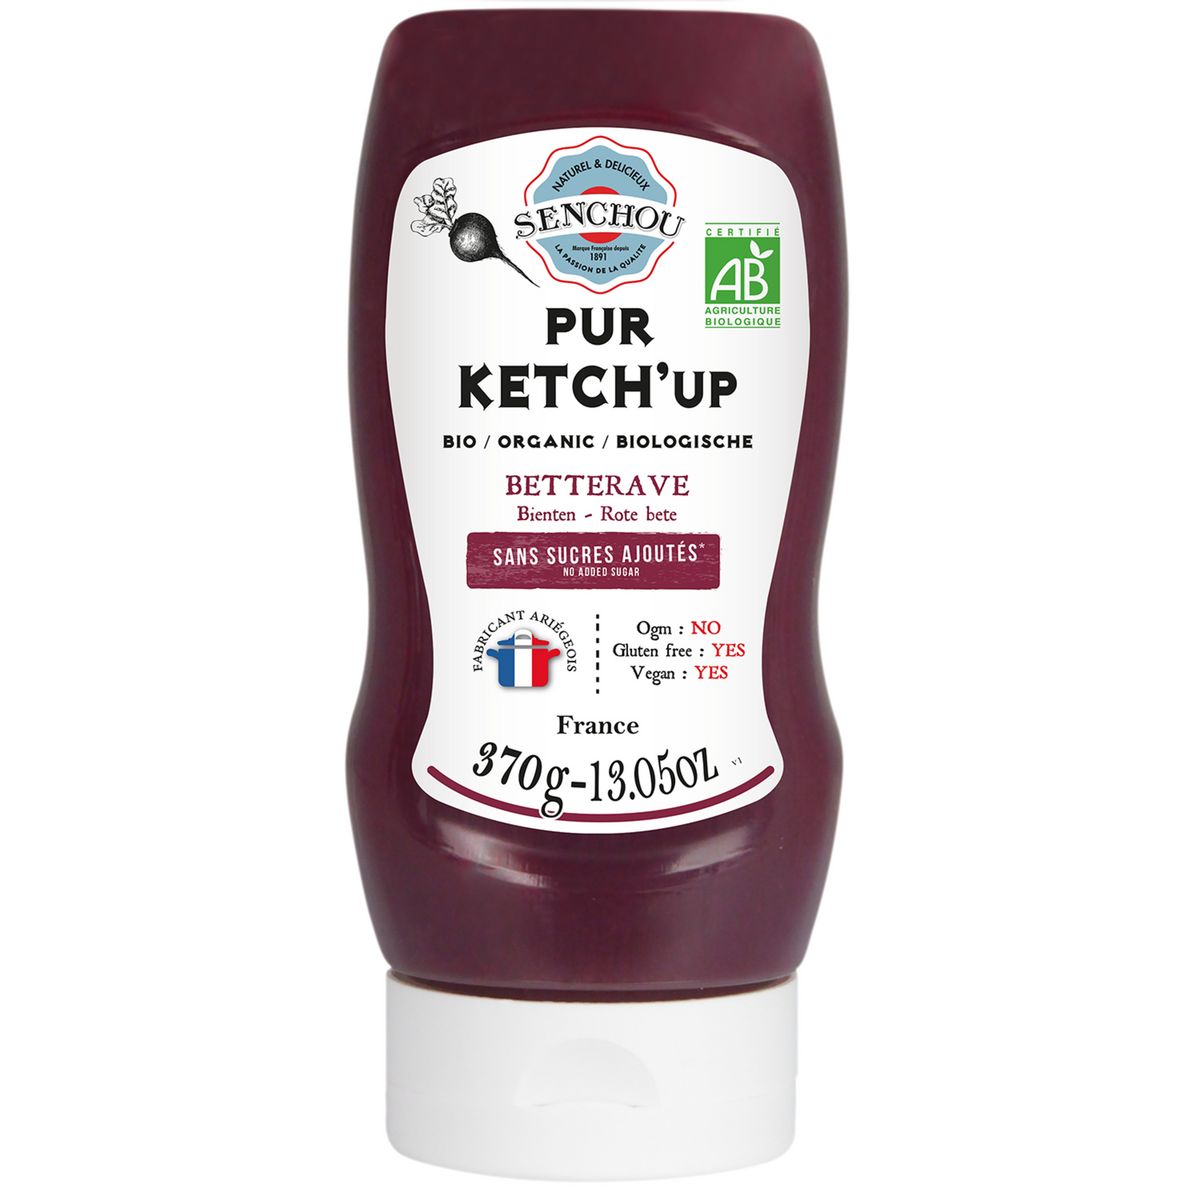 SENCHOU Pur sauce ketchup betterave bio sans sucres ajoutés 370g